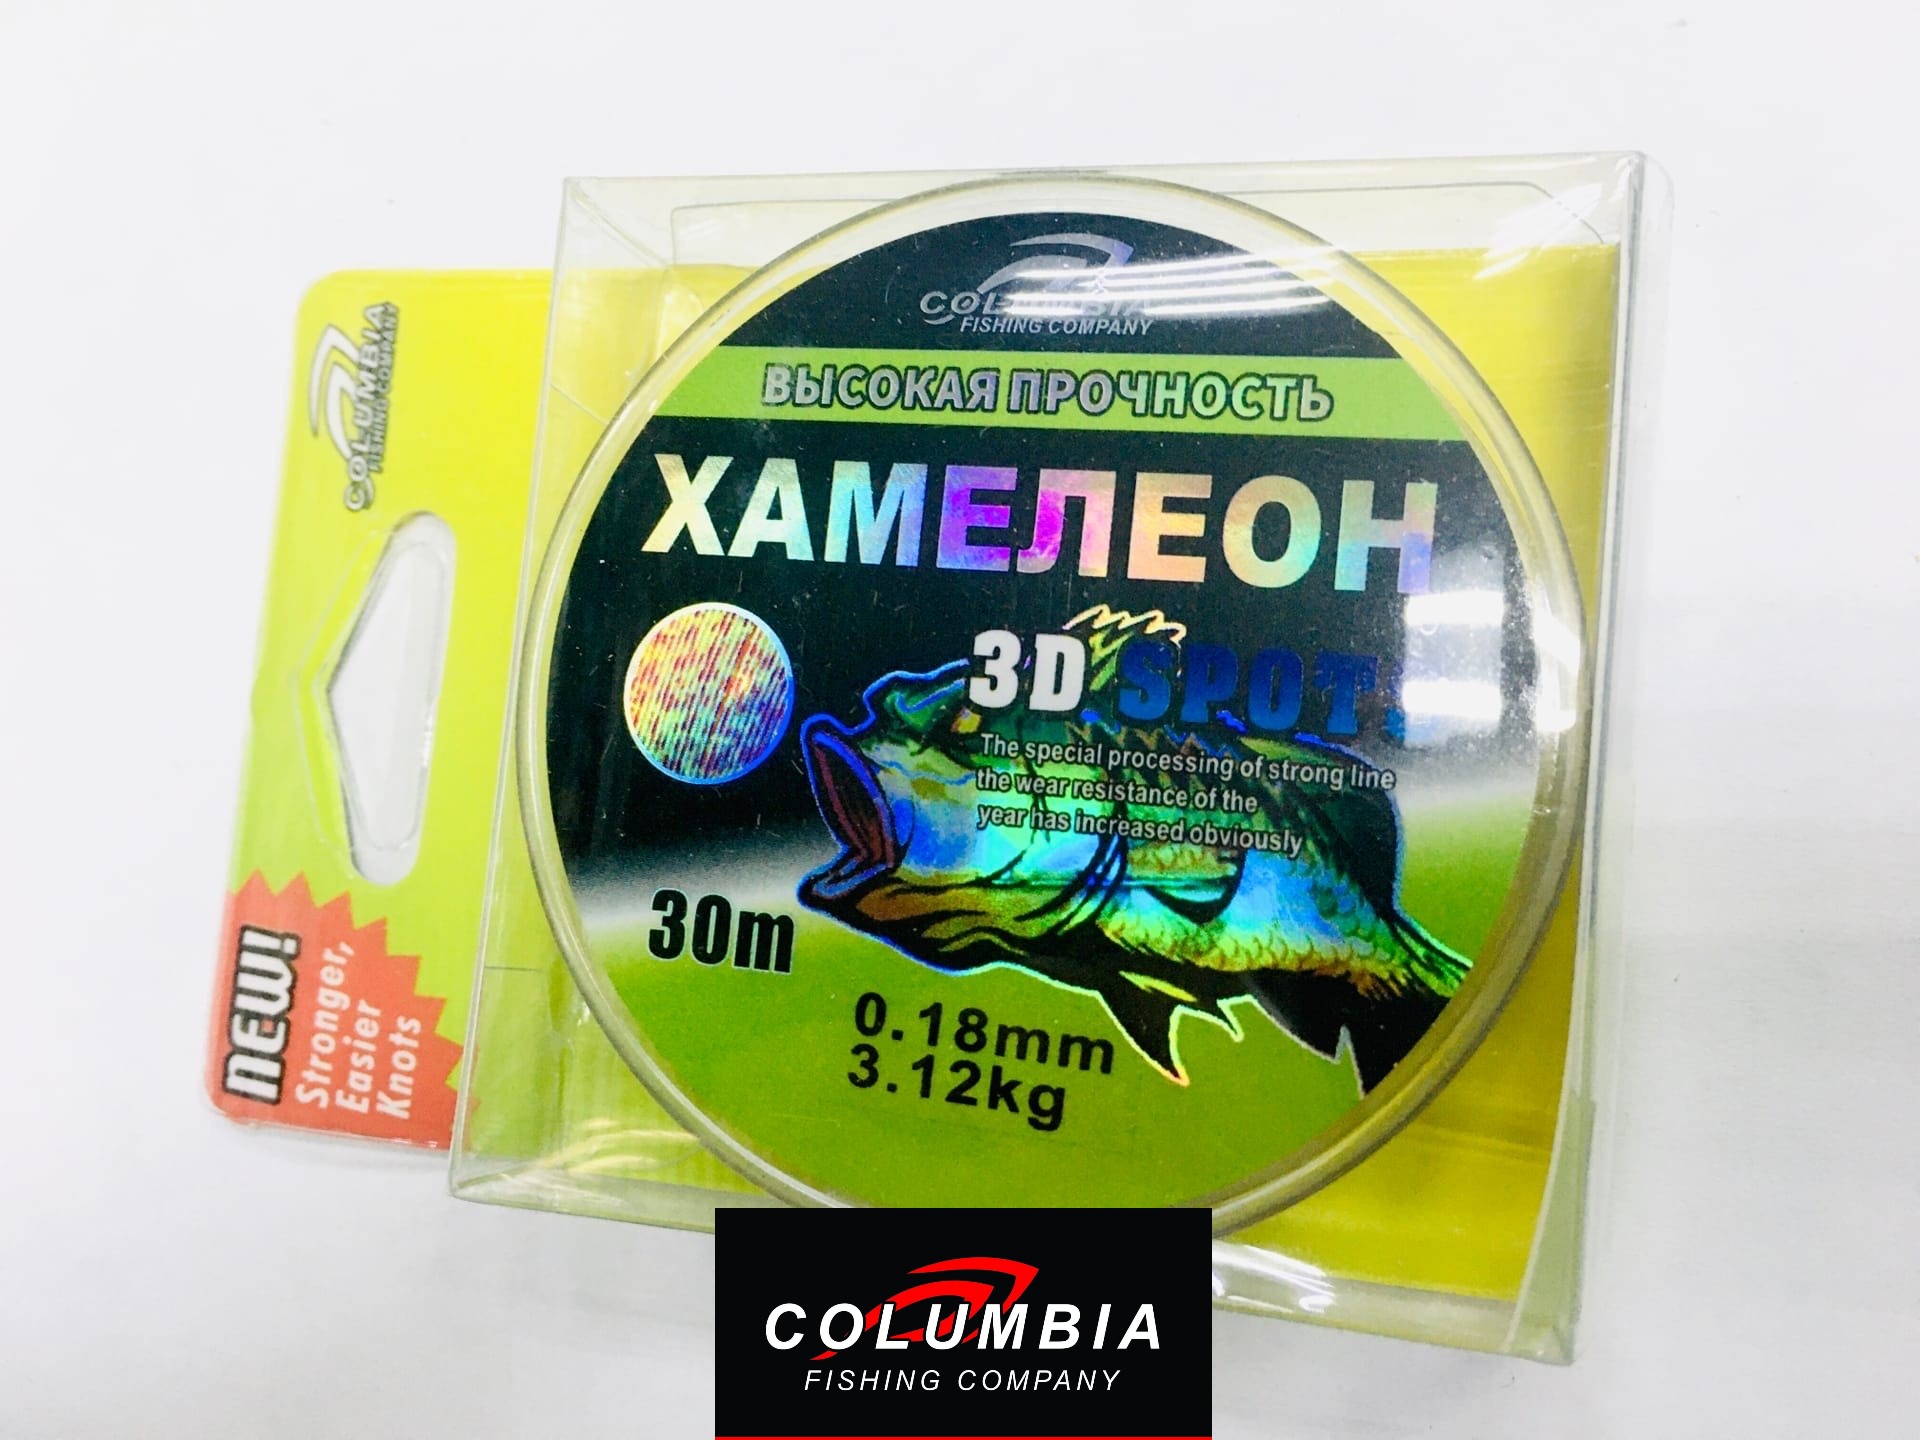 Леска Хамелеон 3D Spots 30m, 0.18mm/3.12kg